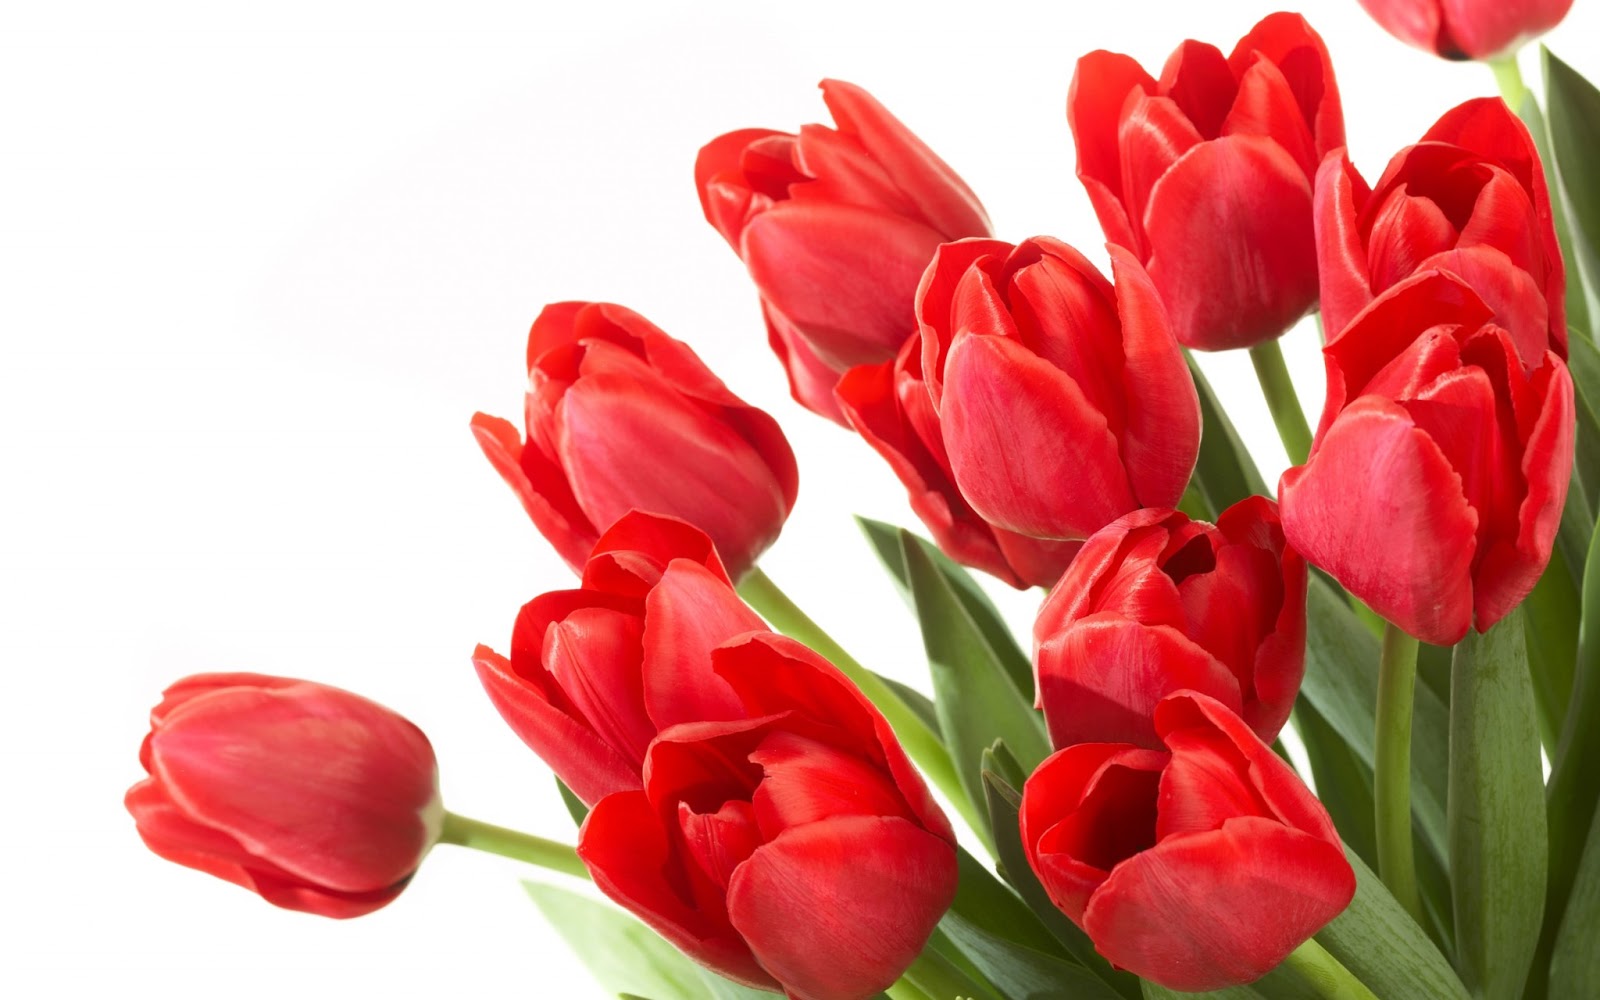 Hoa tulip tặng vợ mang ý nghĩa về tình yêu hoàn hảo